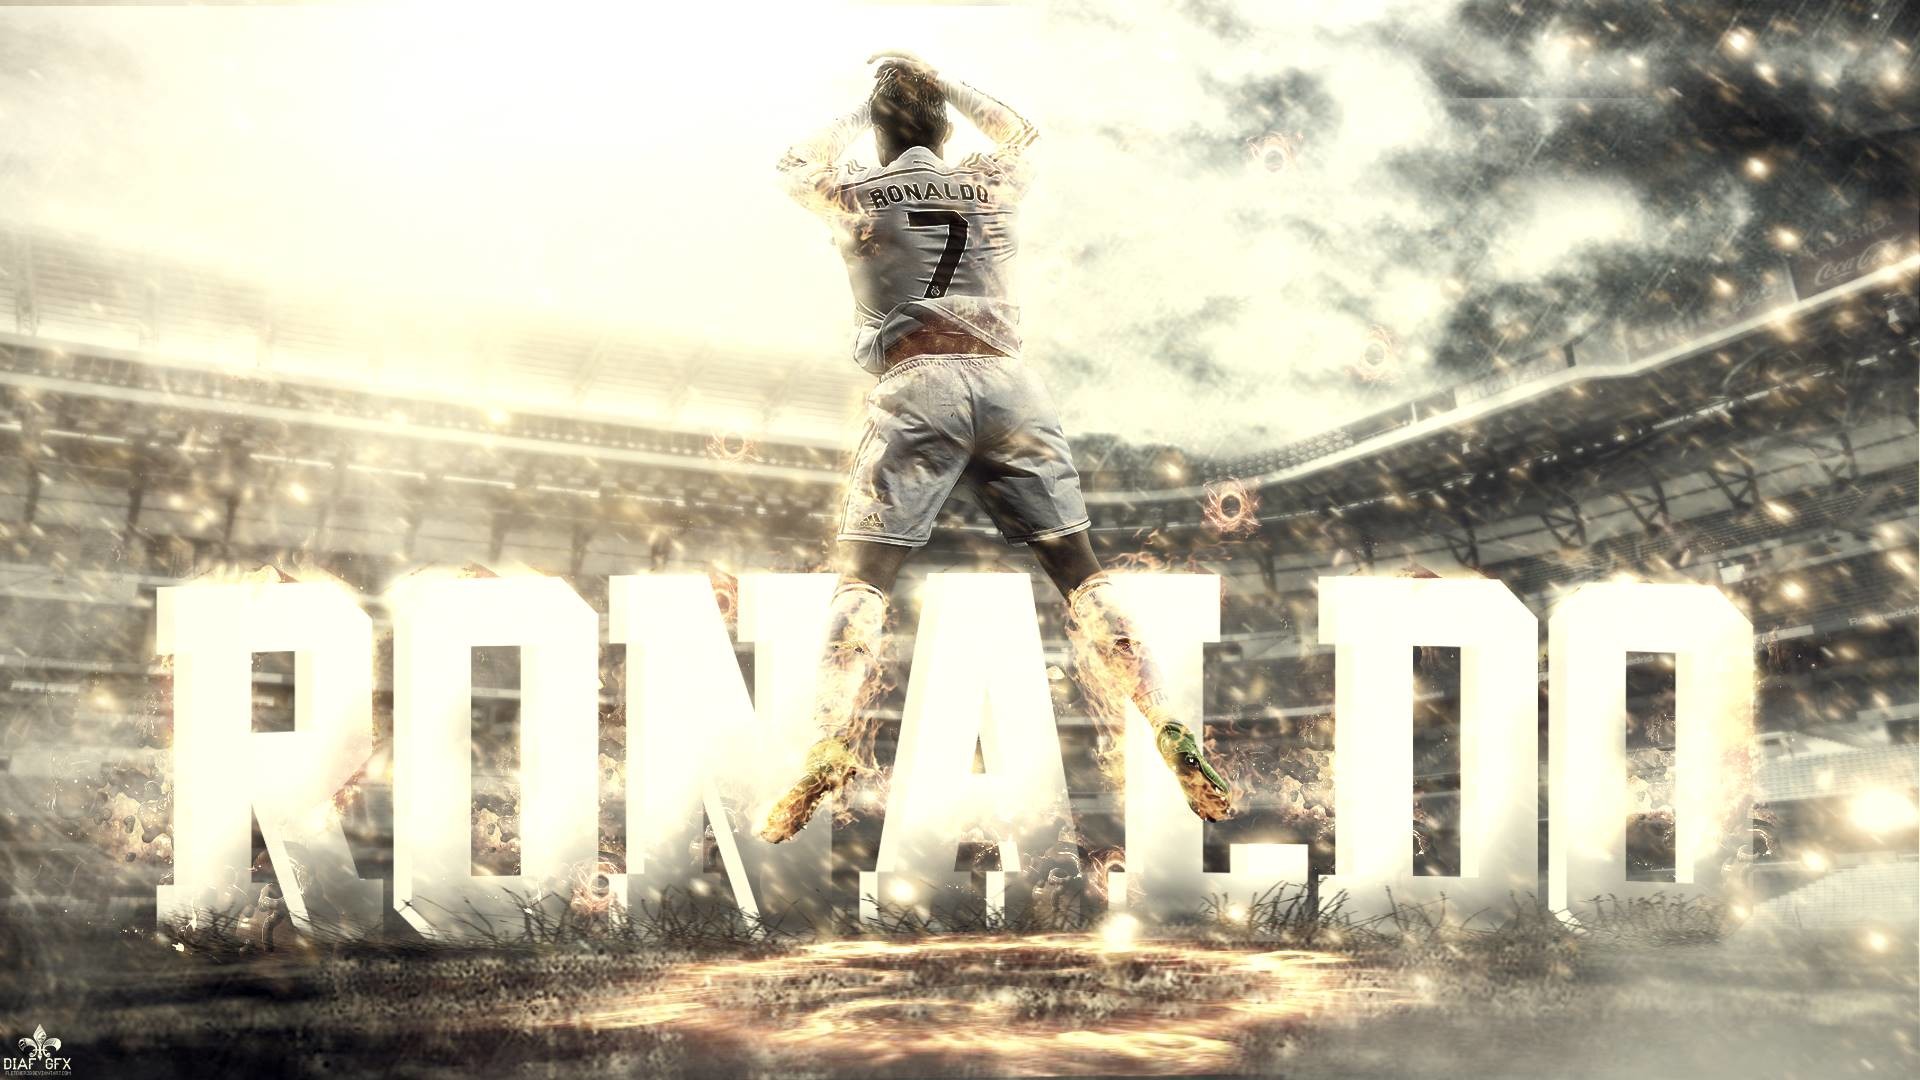 Wallpapers Ronaldo: Những hình nền đẹp với hình ảnh của Cristiano Ronaldo sẽ khiến bạn mãn nhãn và đánh thức cảm hứng sáng tạo. Kết hợp giữa kỹ năng điêu luyện và ngoại hình tuyệt vời, Ronaldo đang là niềm tự hào của bóng đá thế giới.